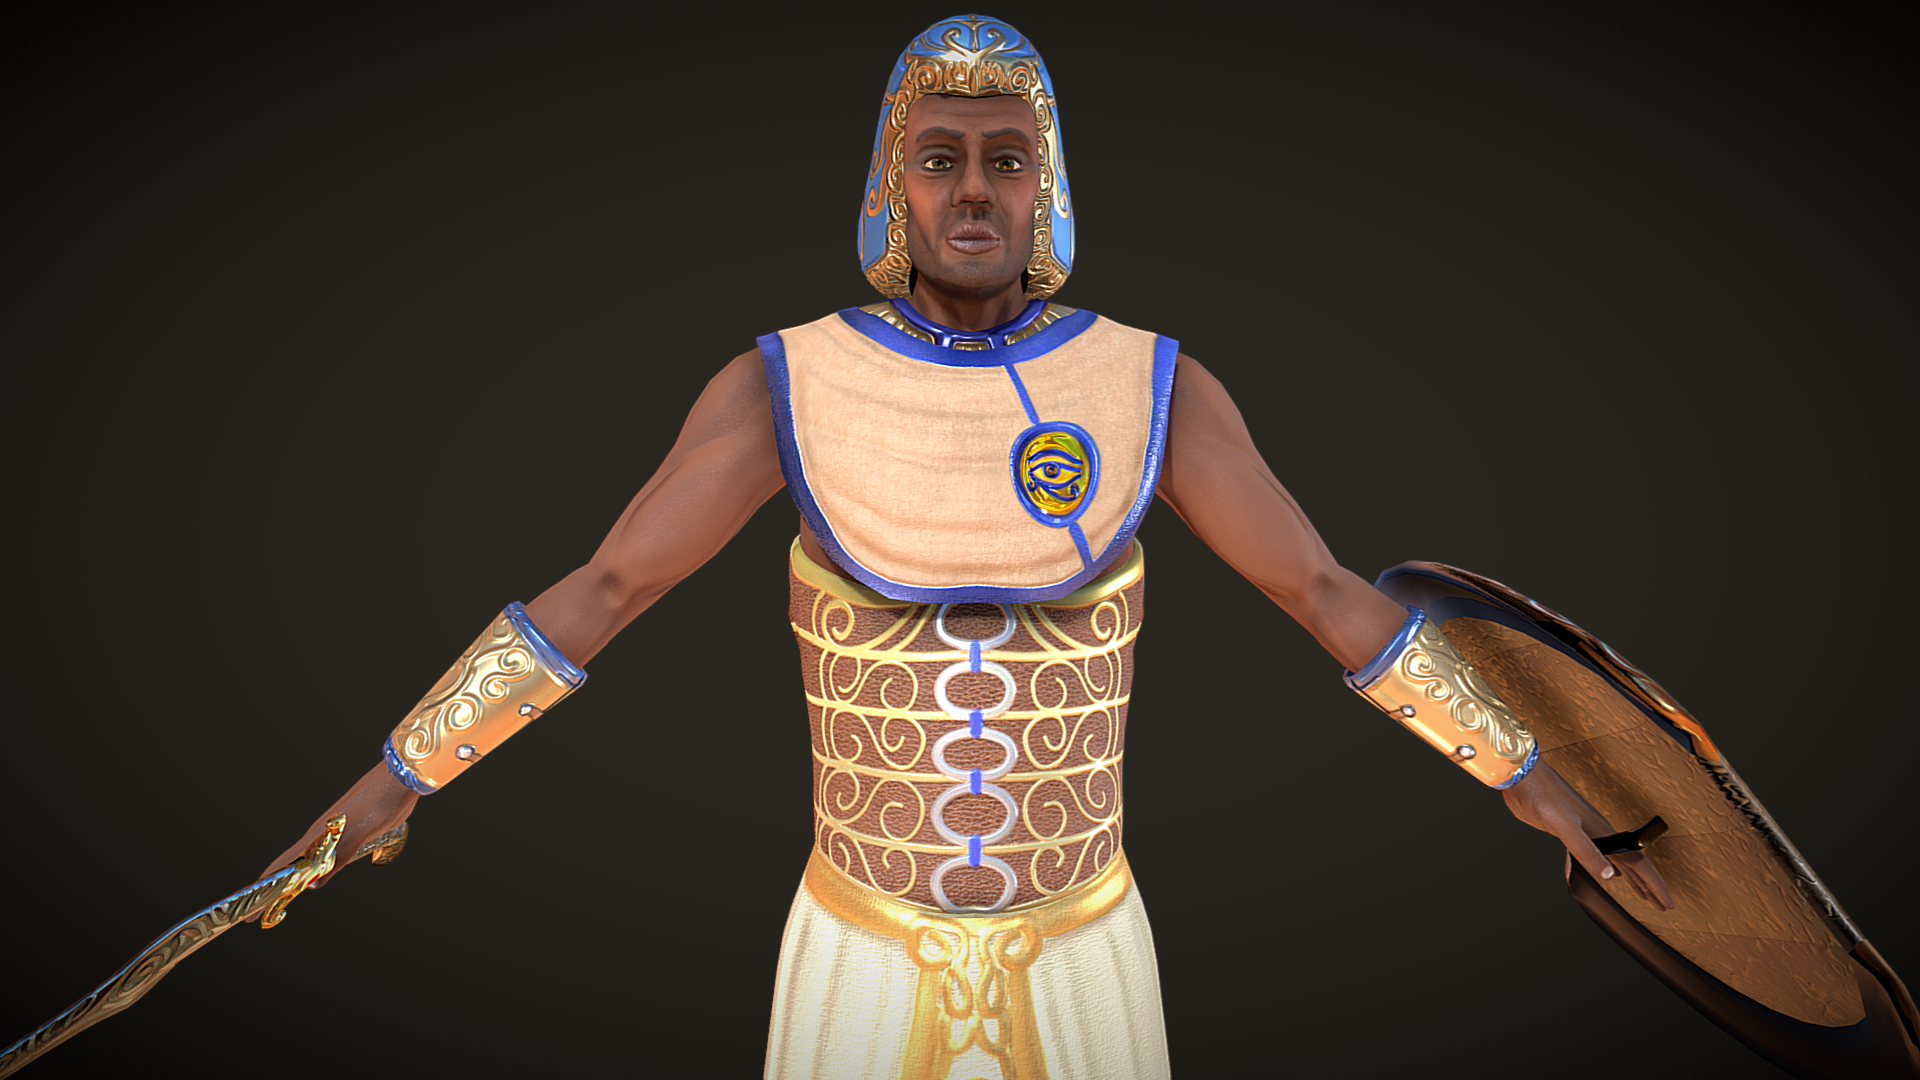 ancient egyptian armor